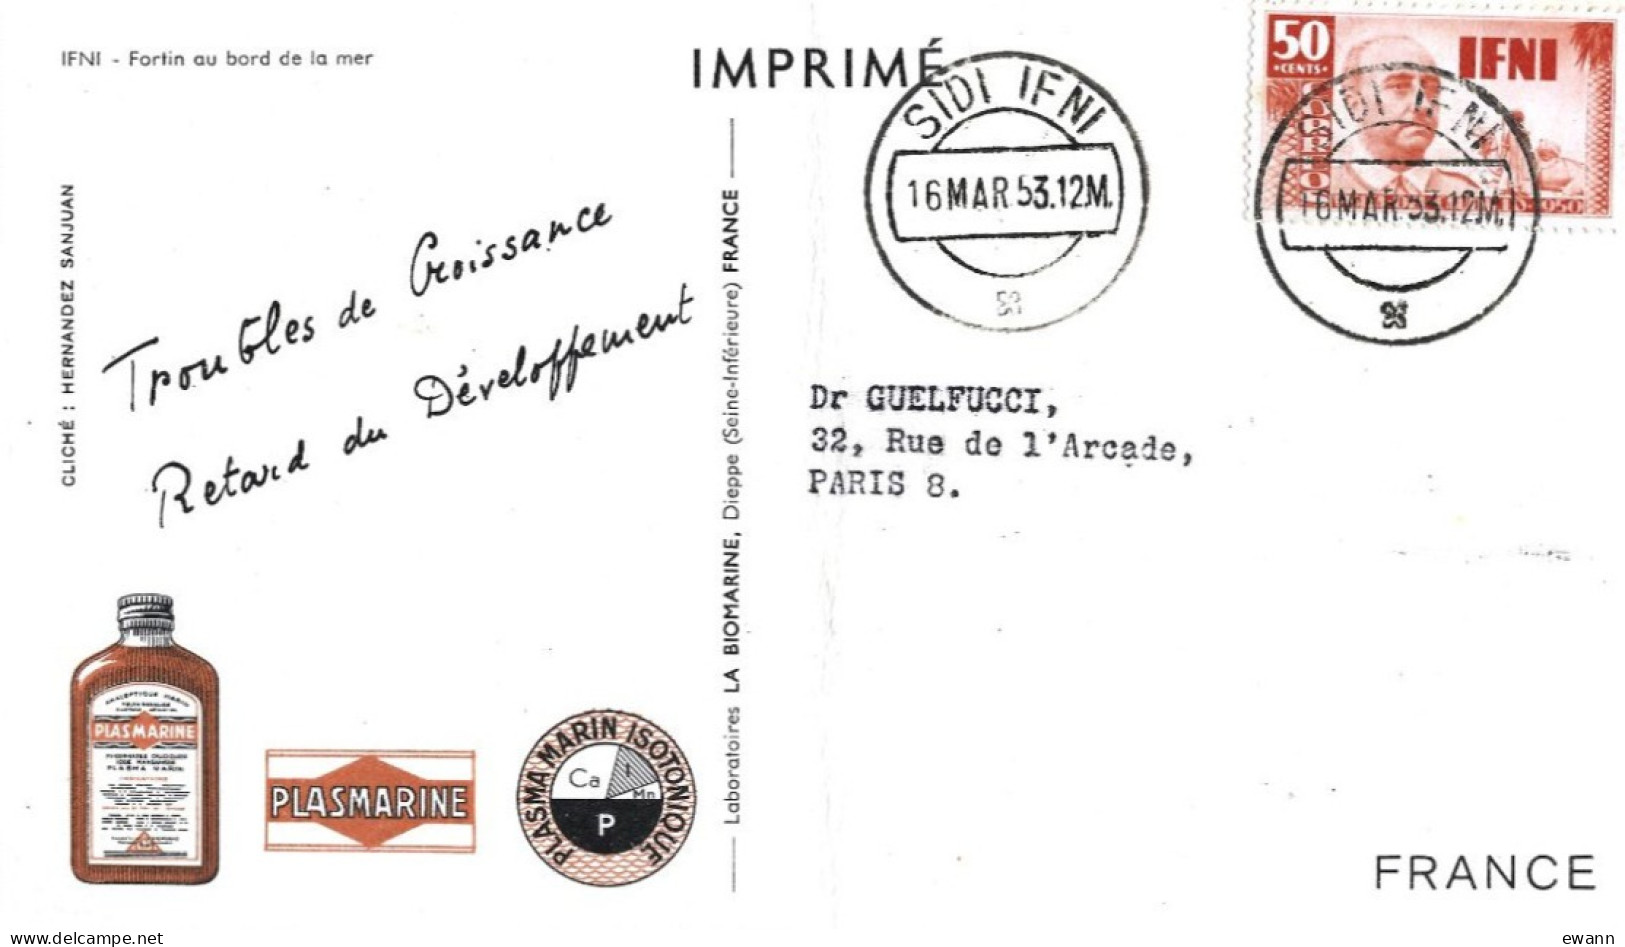 2 Cartes Postales Publicitaires "Plasmarine" - Ifni, Sahara Occidental + Timbres - Advertising